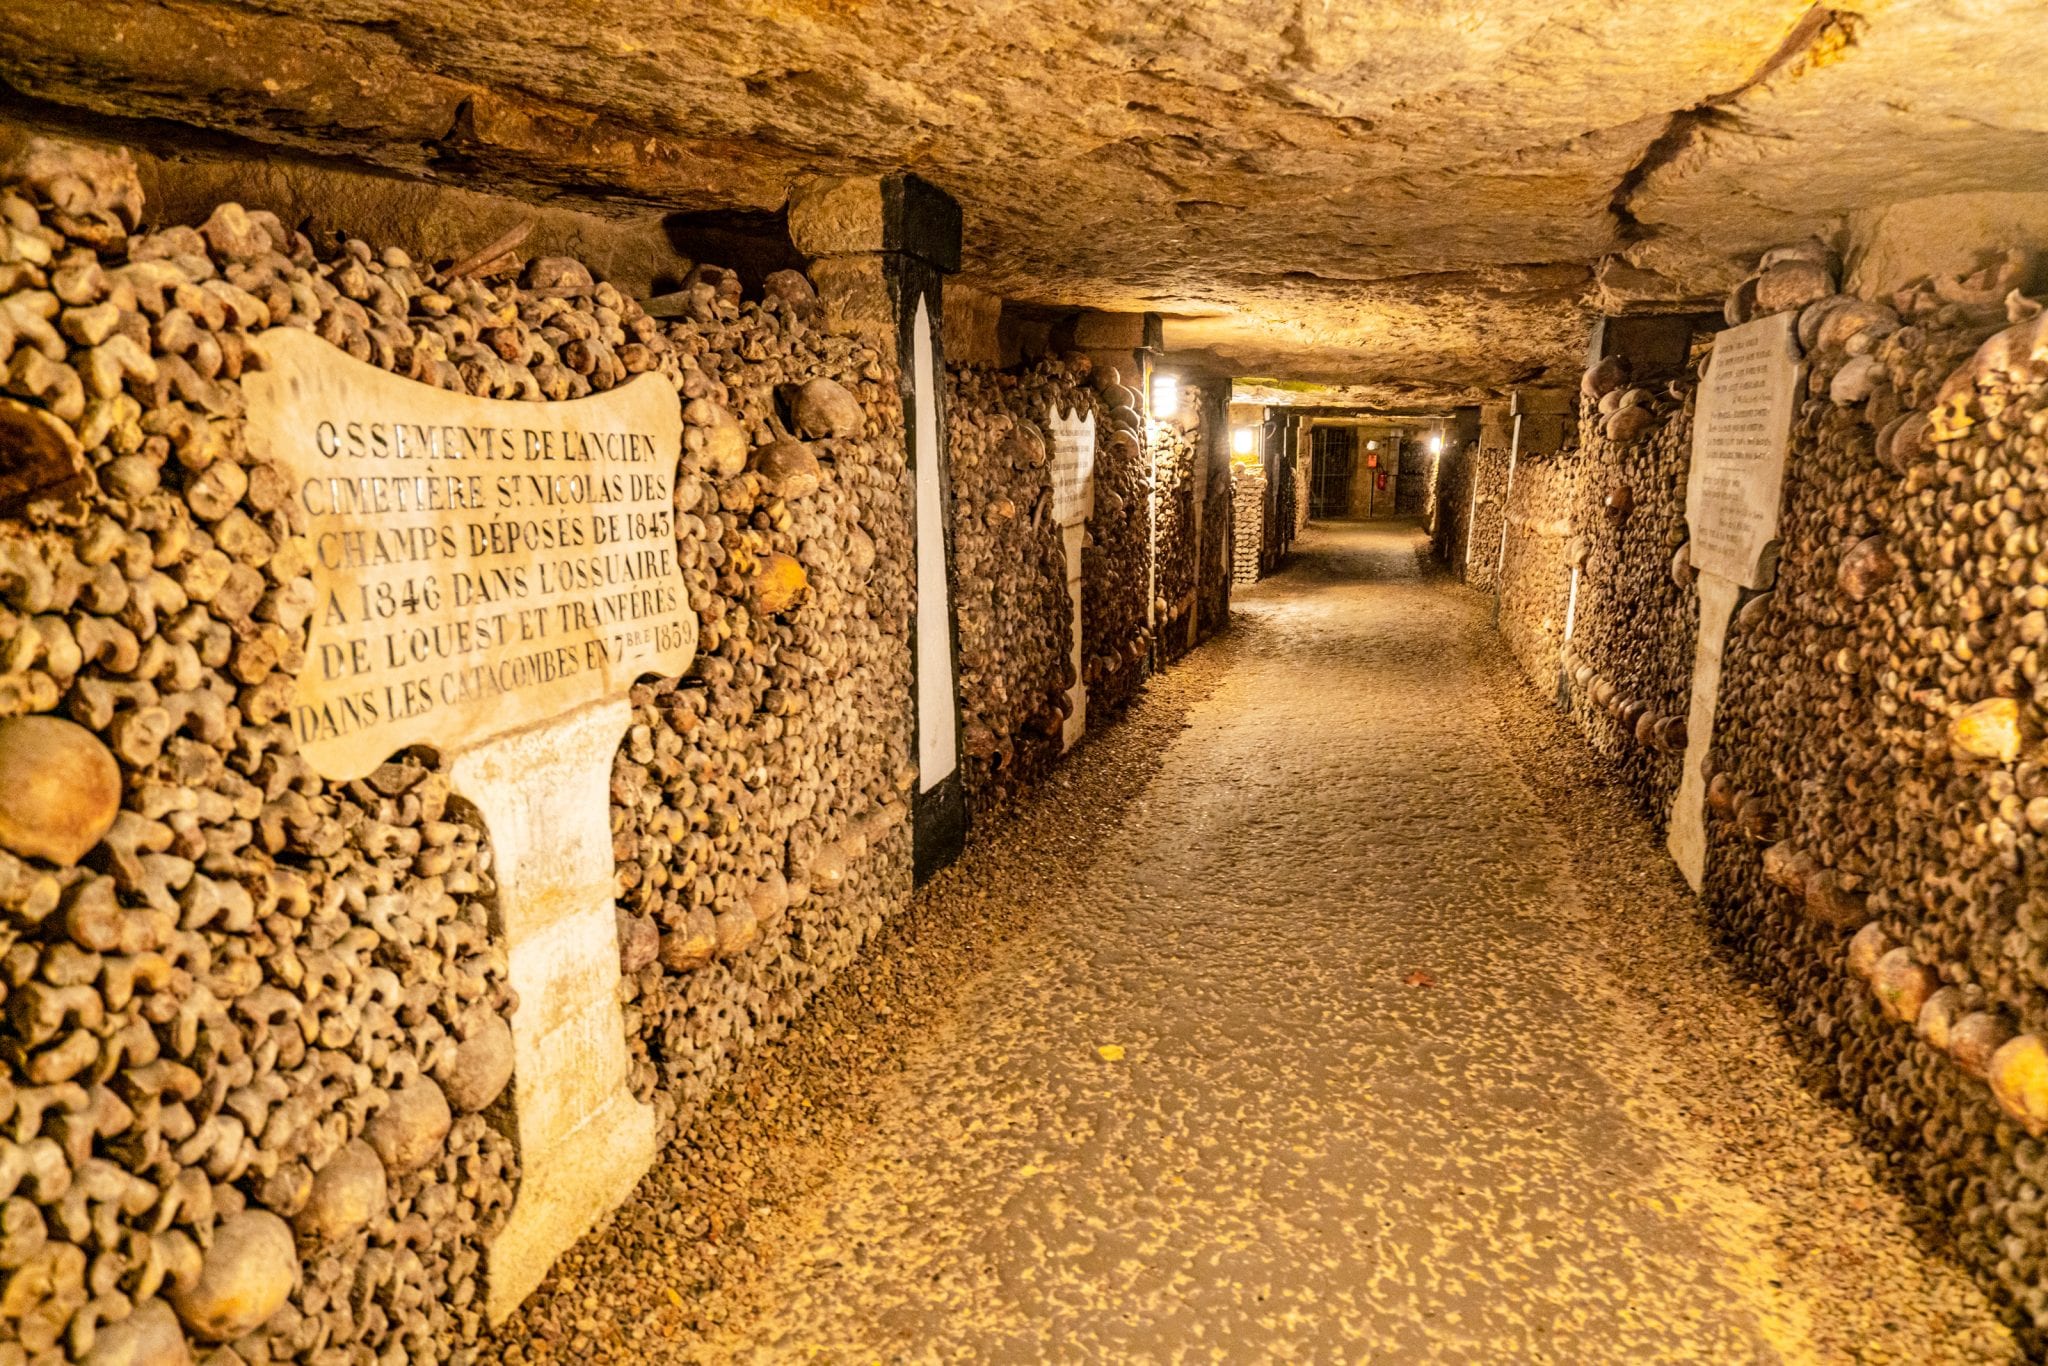 paris catacombs visit